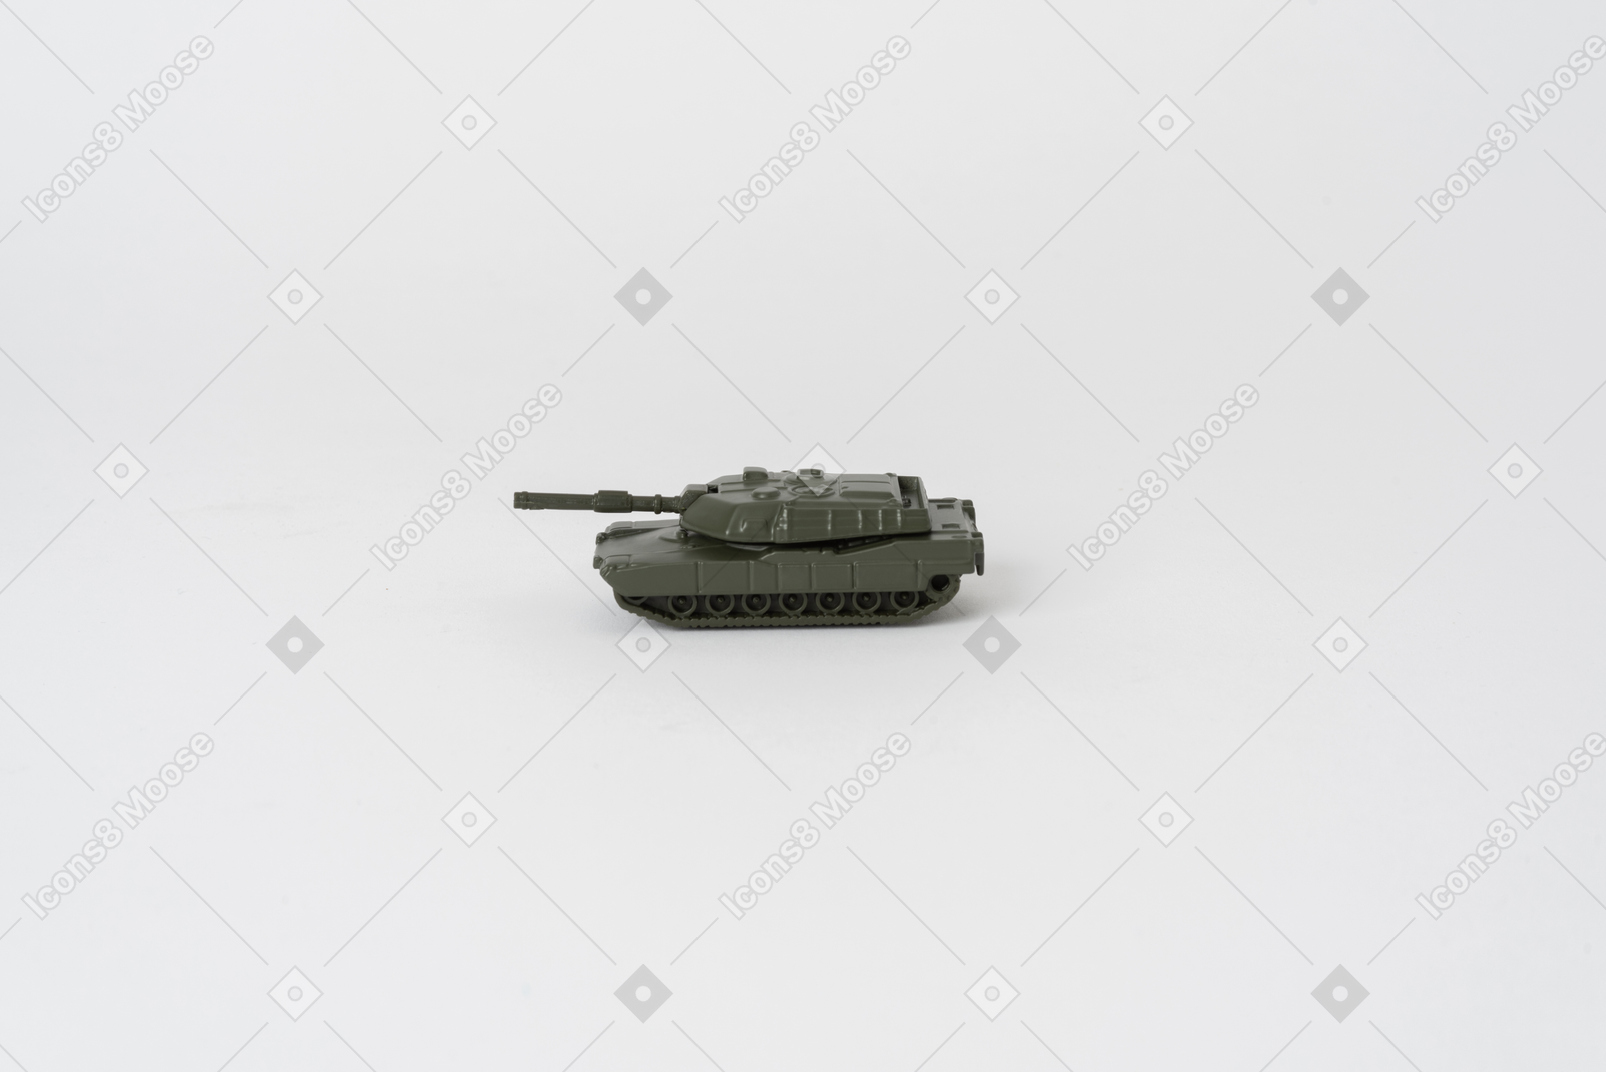 평범한 흰색 배경에 서있는 장난감 탱크의 측면 샷